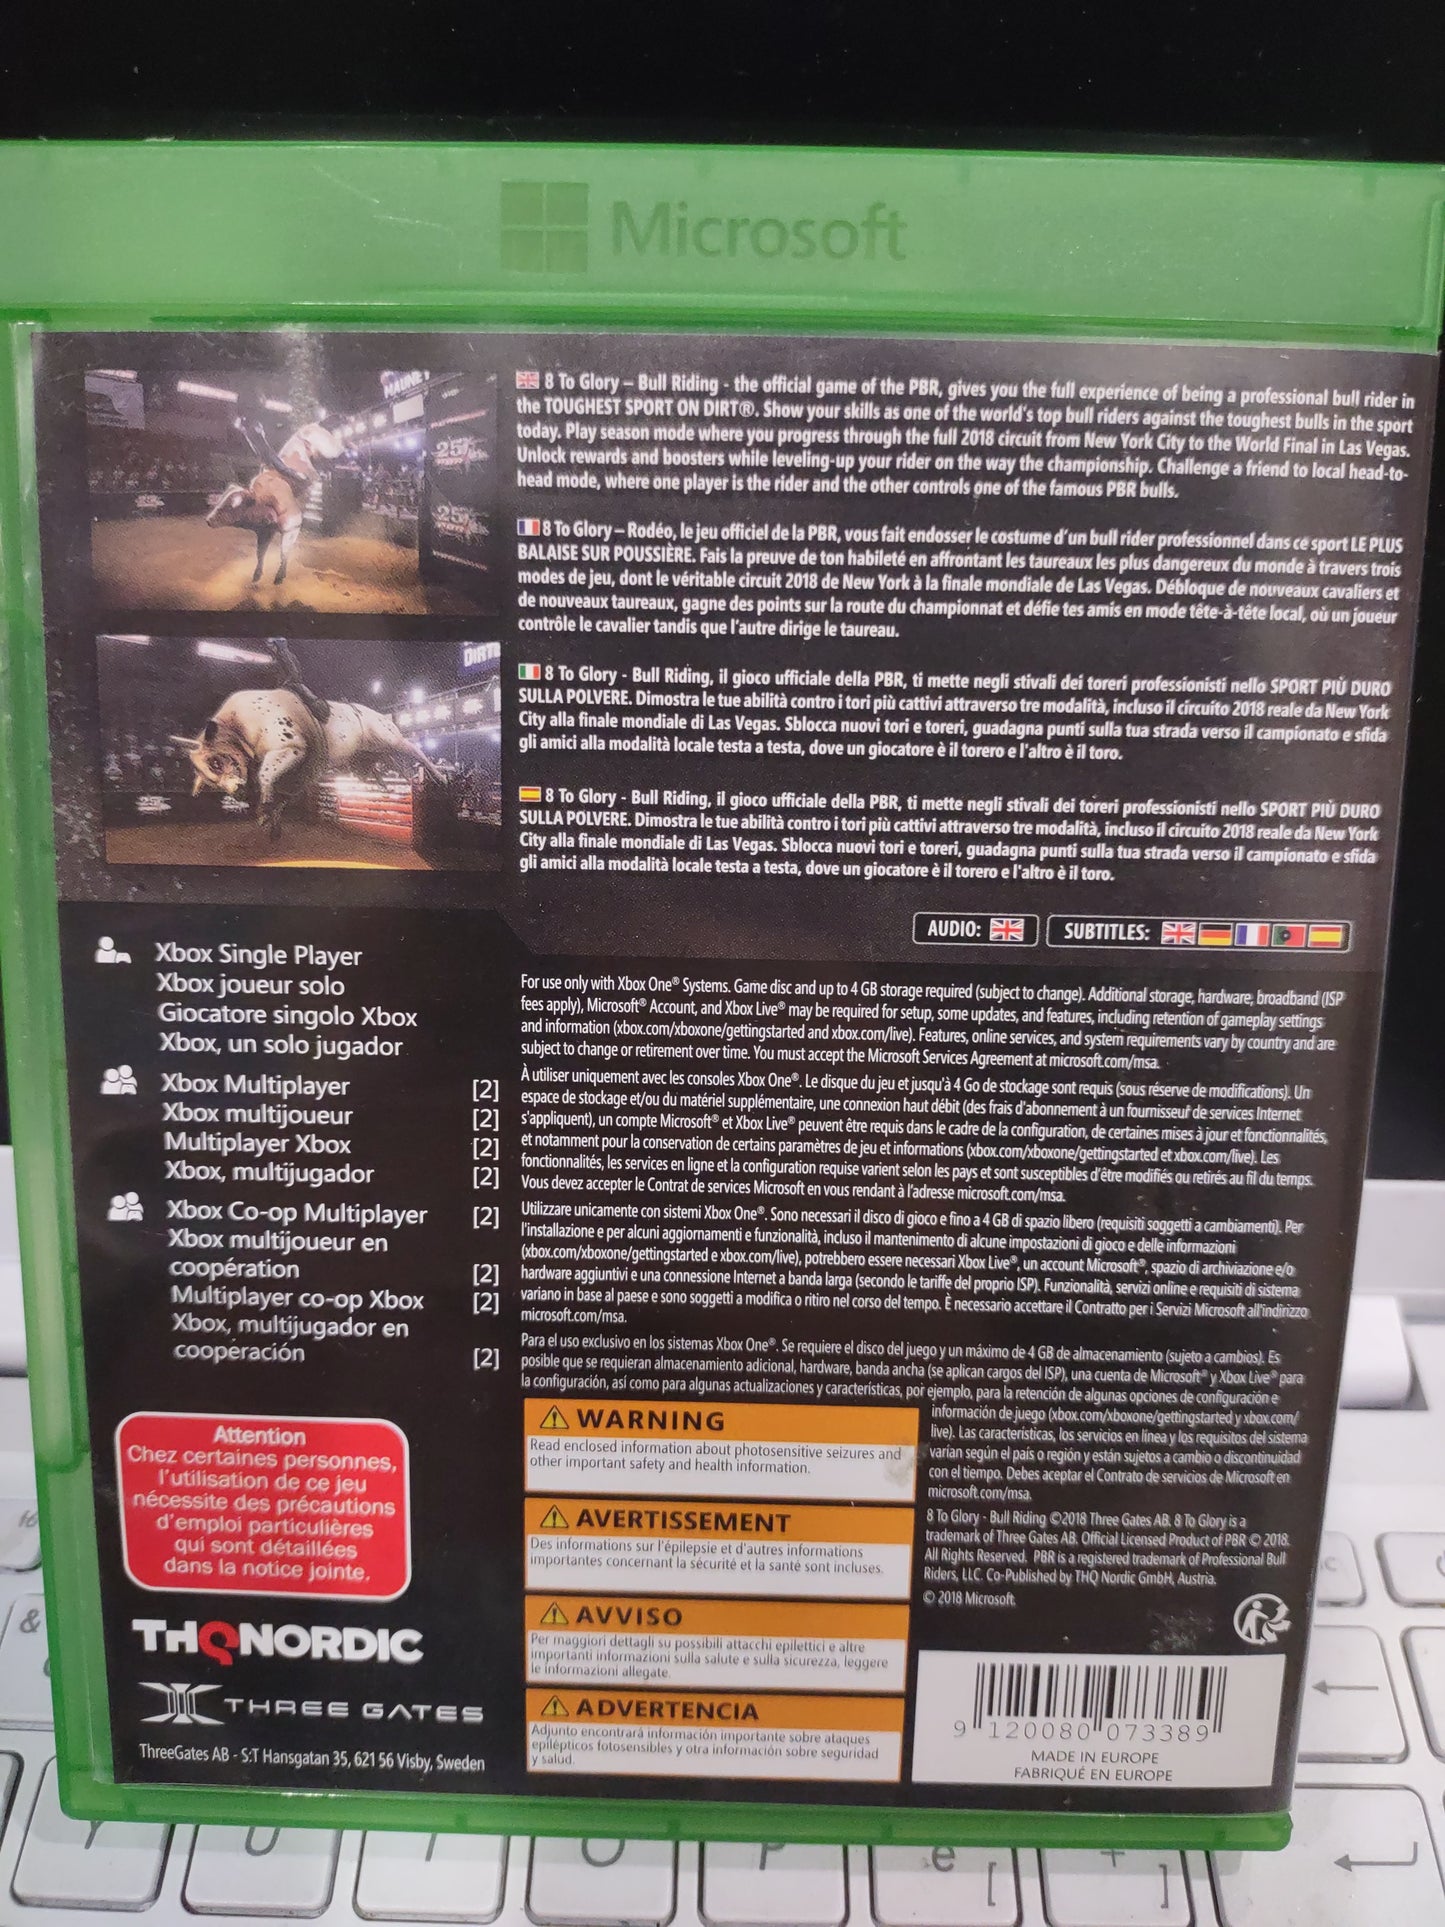 Gioco Xbox One 8 tò glory sport torero